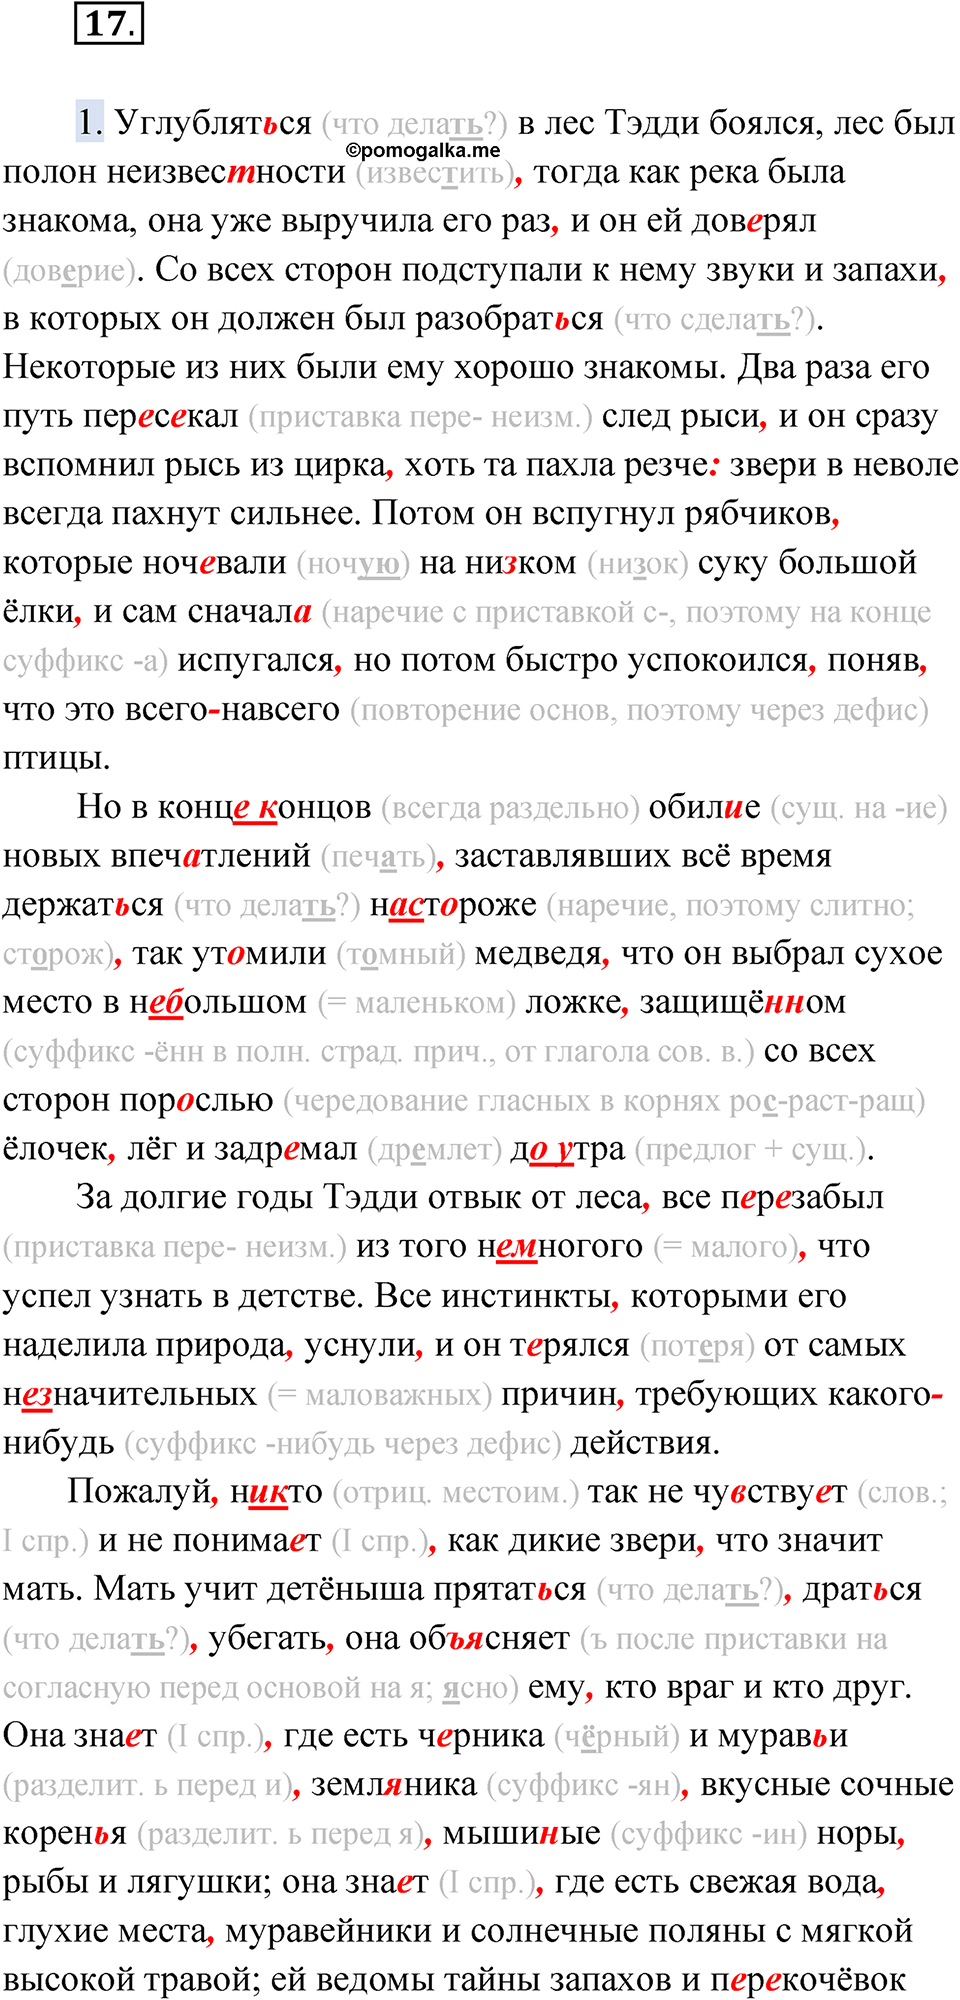 страница 22 упражнение 17 русский язык 9 класс Быстрова 2 часть 2022 год